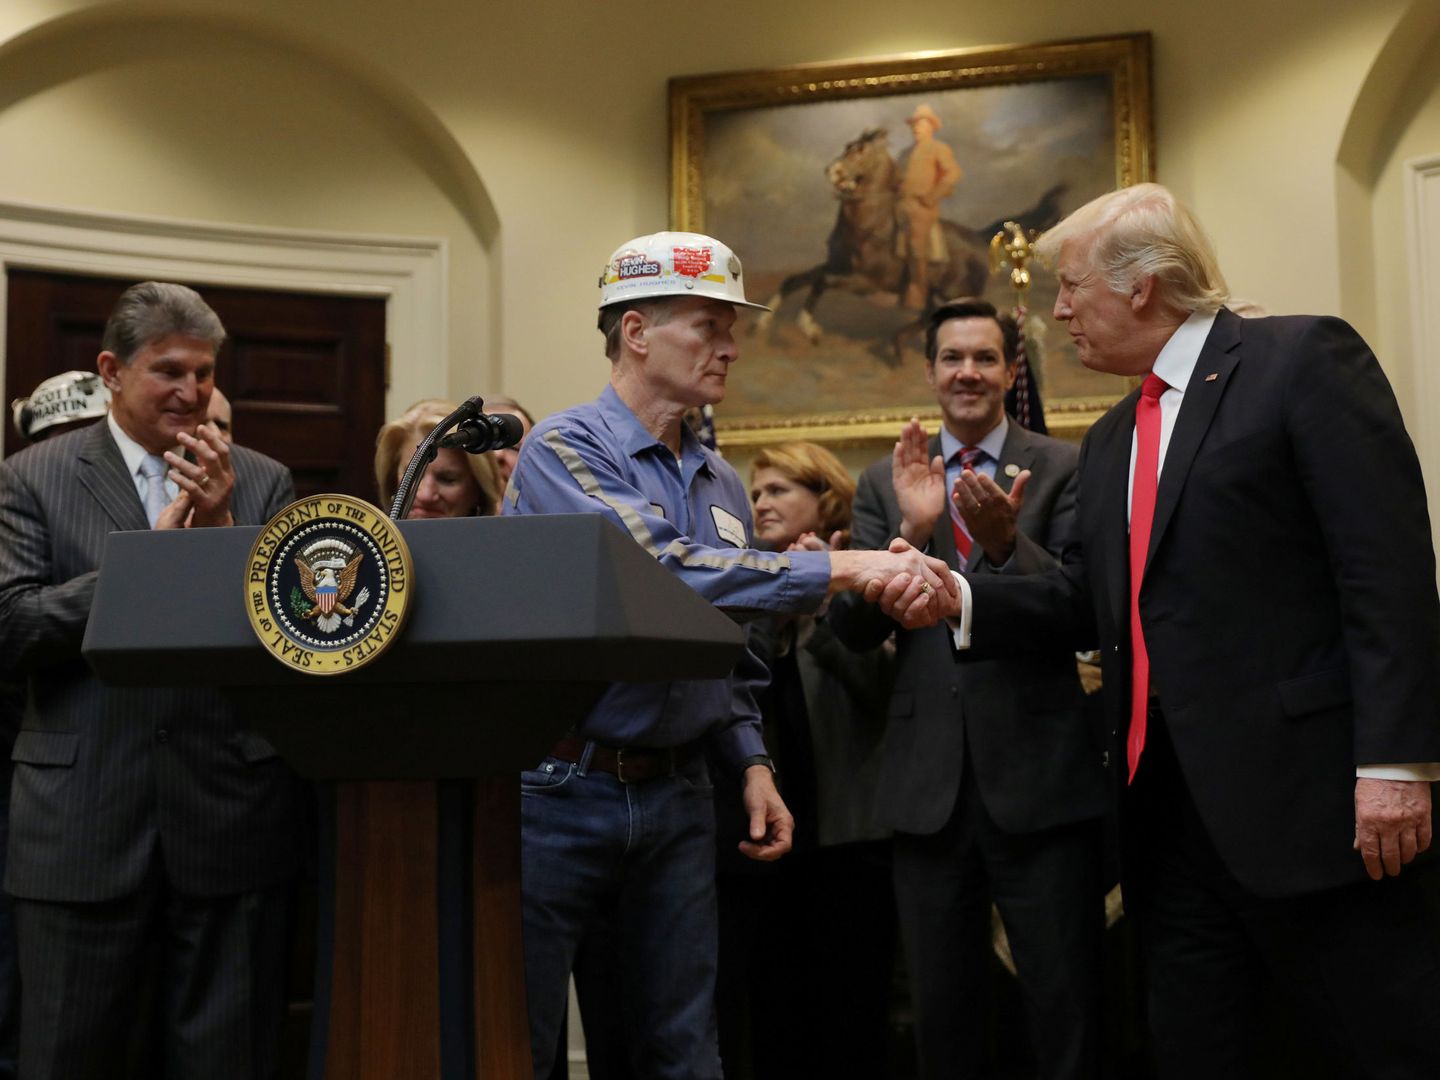 Un minero del carbón le da la mano al presidente Trump en la Casa Blanca. (Reuters)